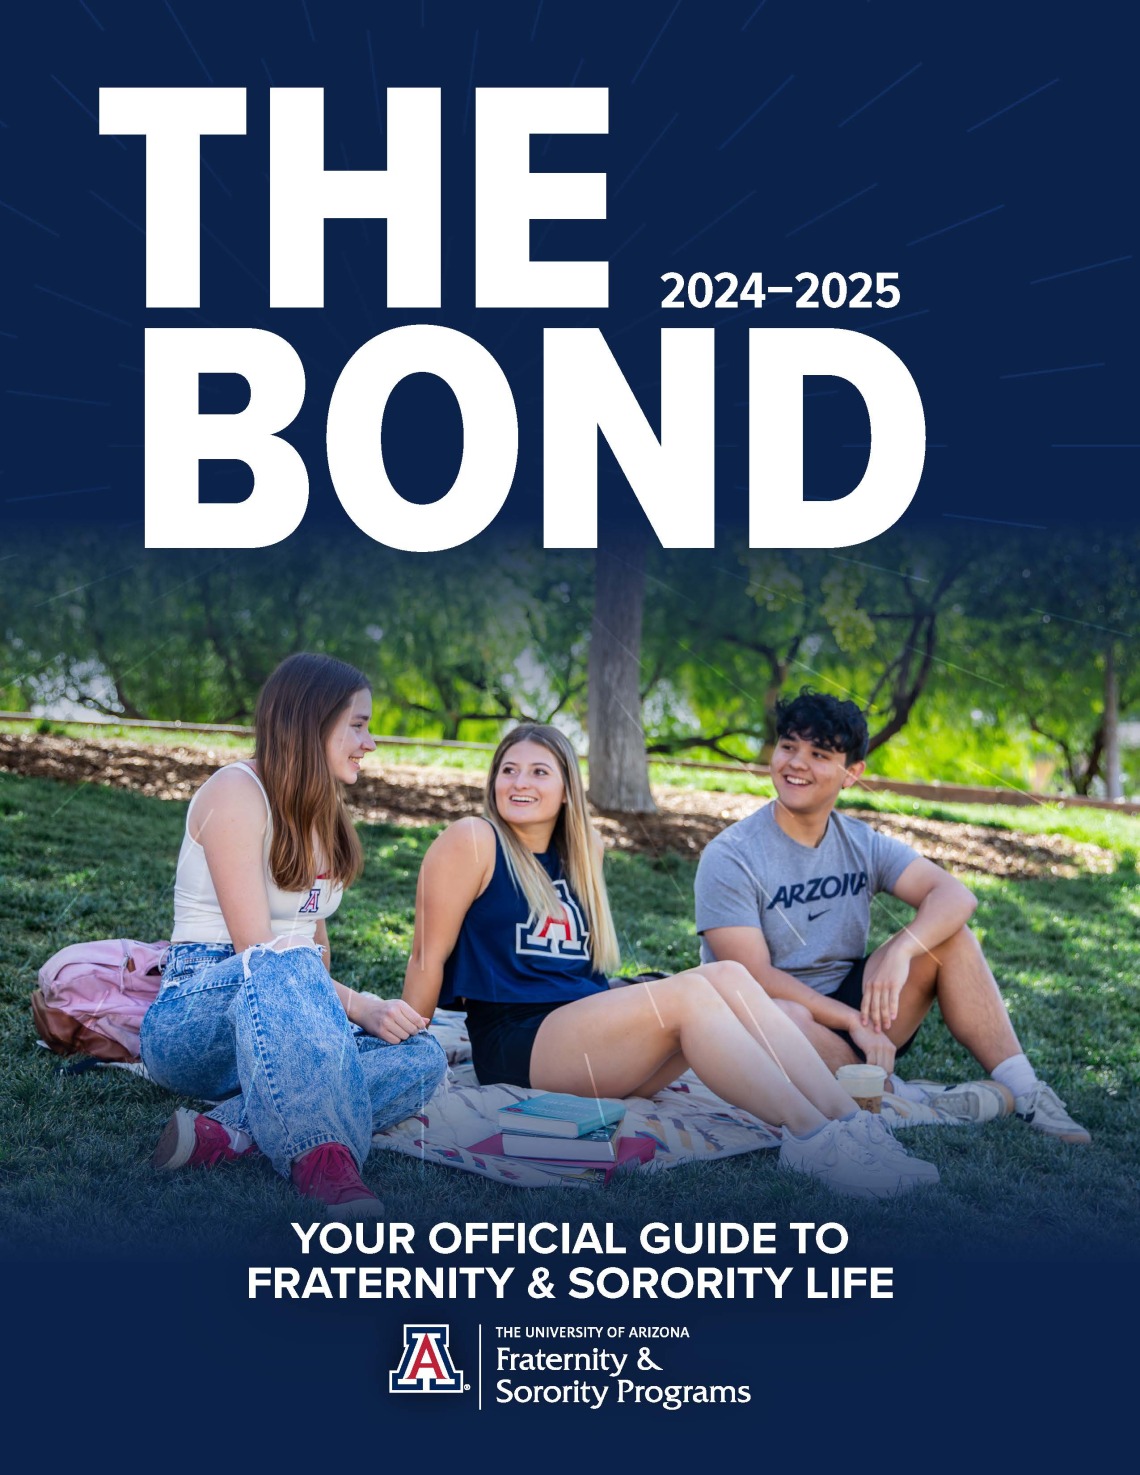 24-25 bond cover